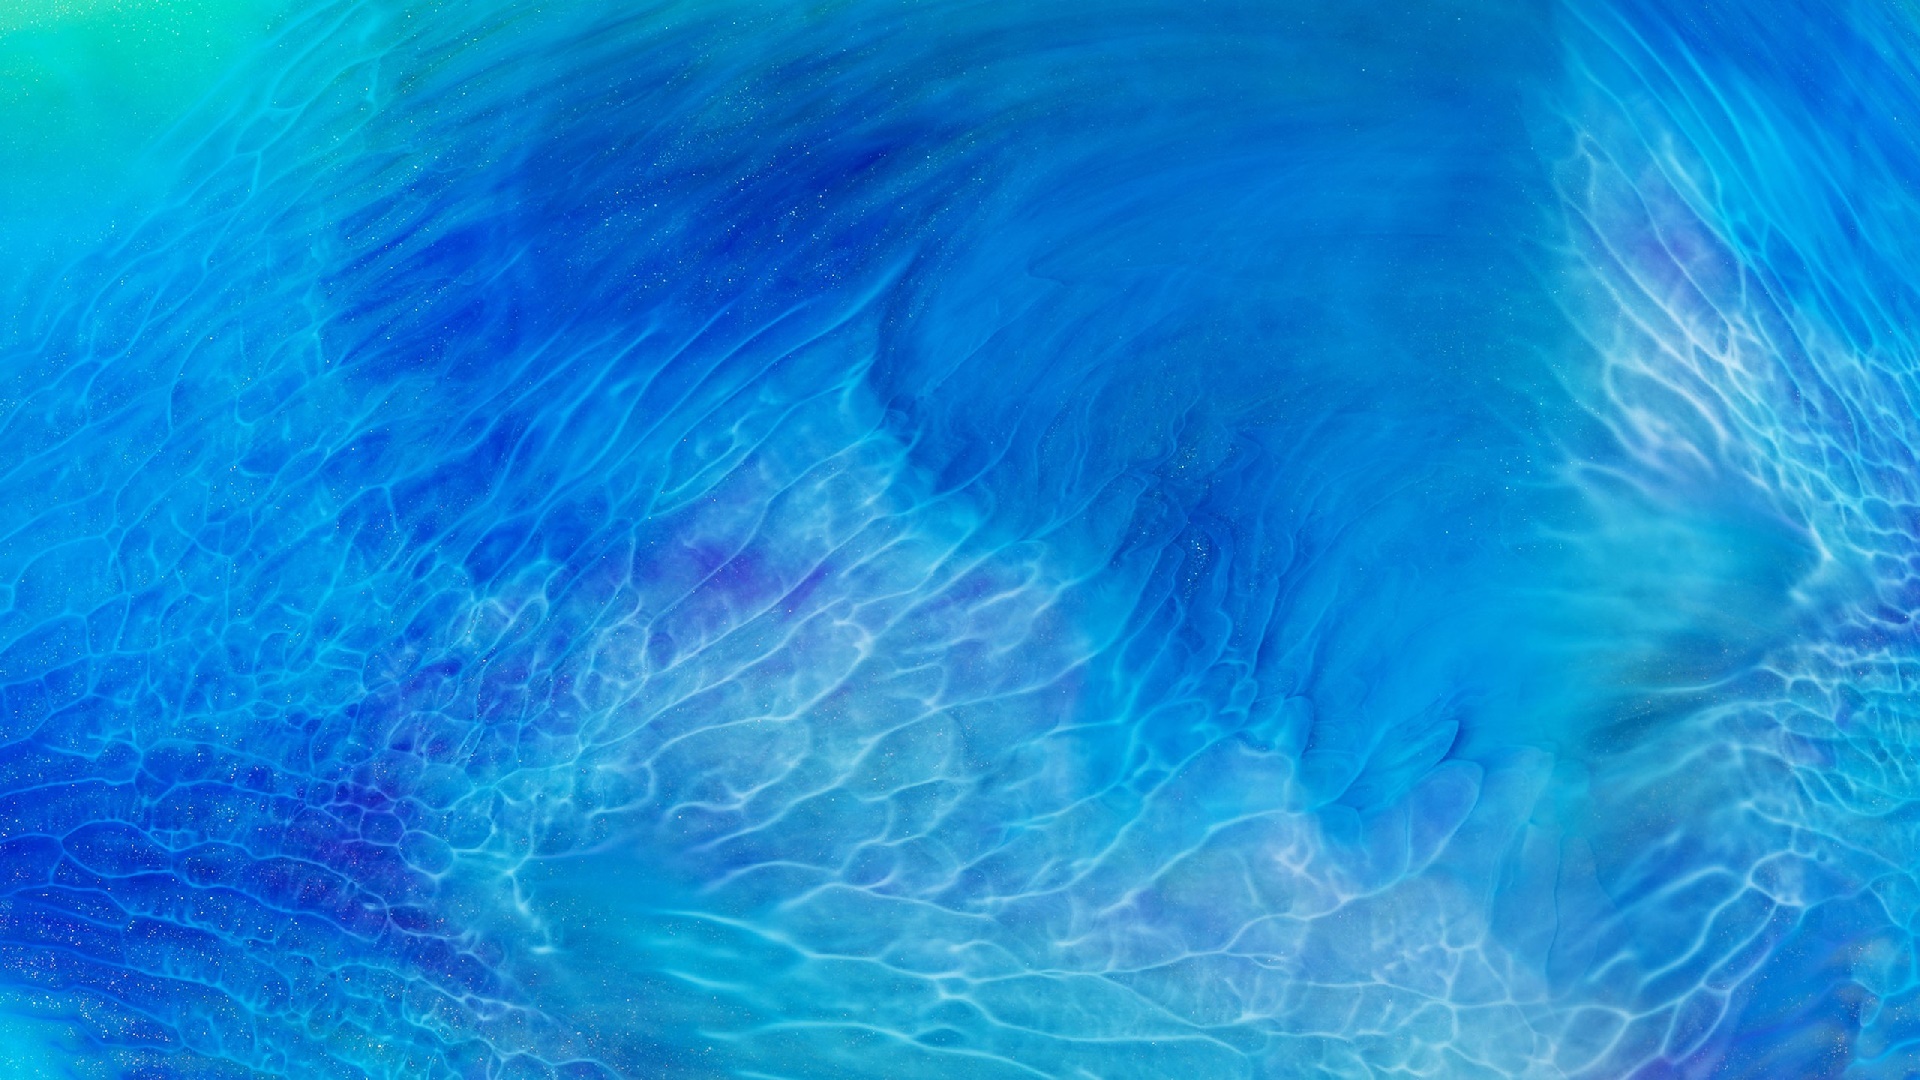 Скачать обои бесплатно Вода, Синий, Земля/природа картинка на рабочий стол ПК